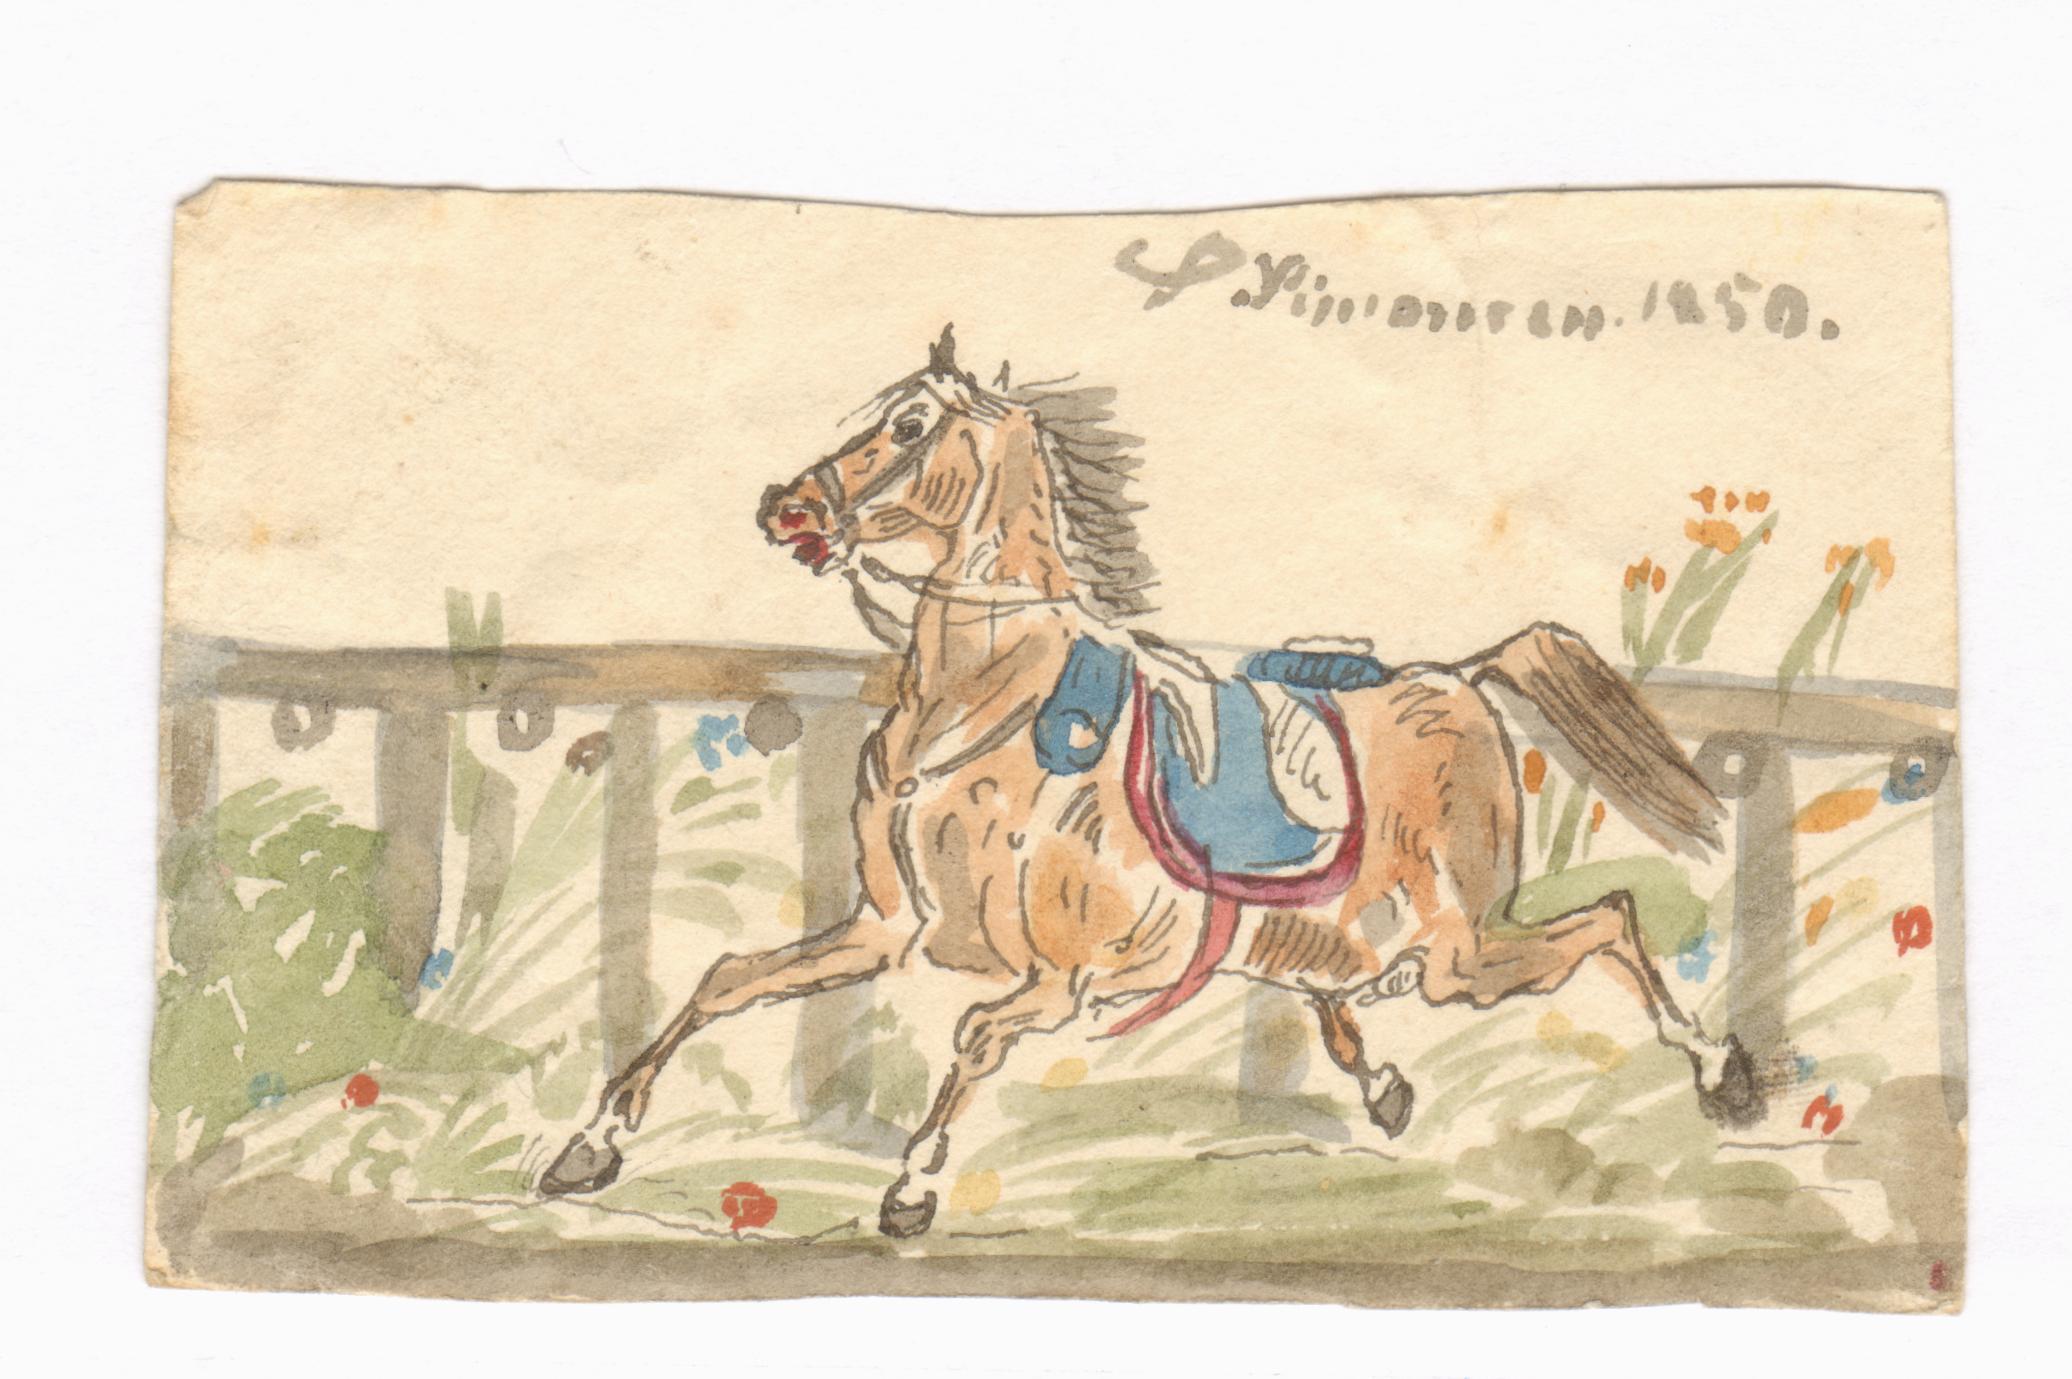 75.131  Hest tegnet af S. Simonsen 1850, ukendt sammenhæng. Lå sammen med de andre tegninger...